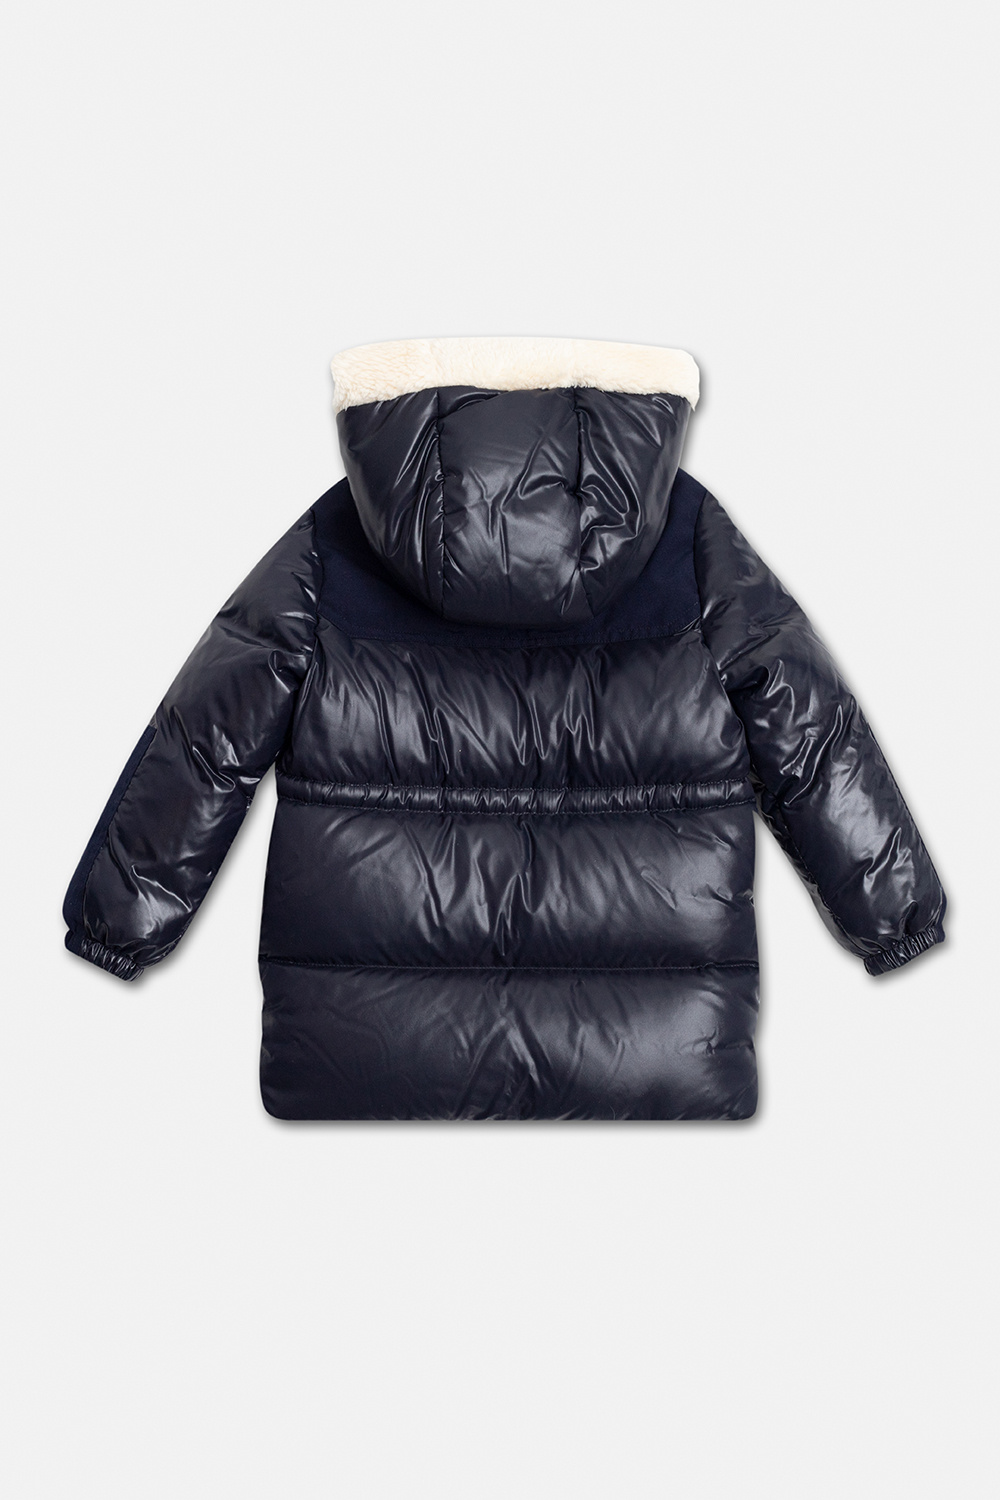 Moncler Enfant ‘Comil’ down jacket